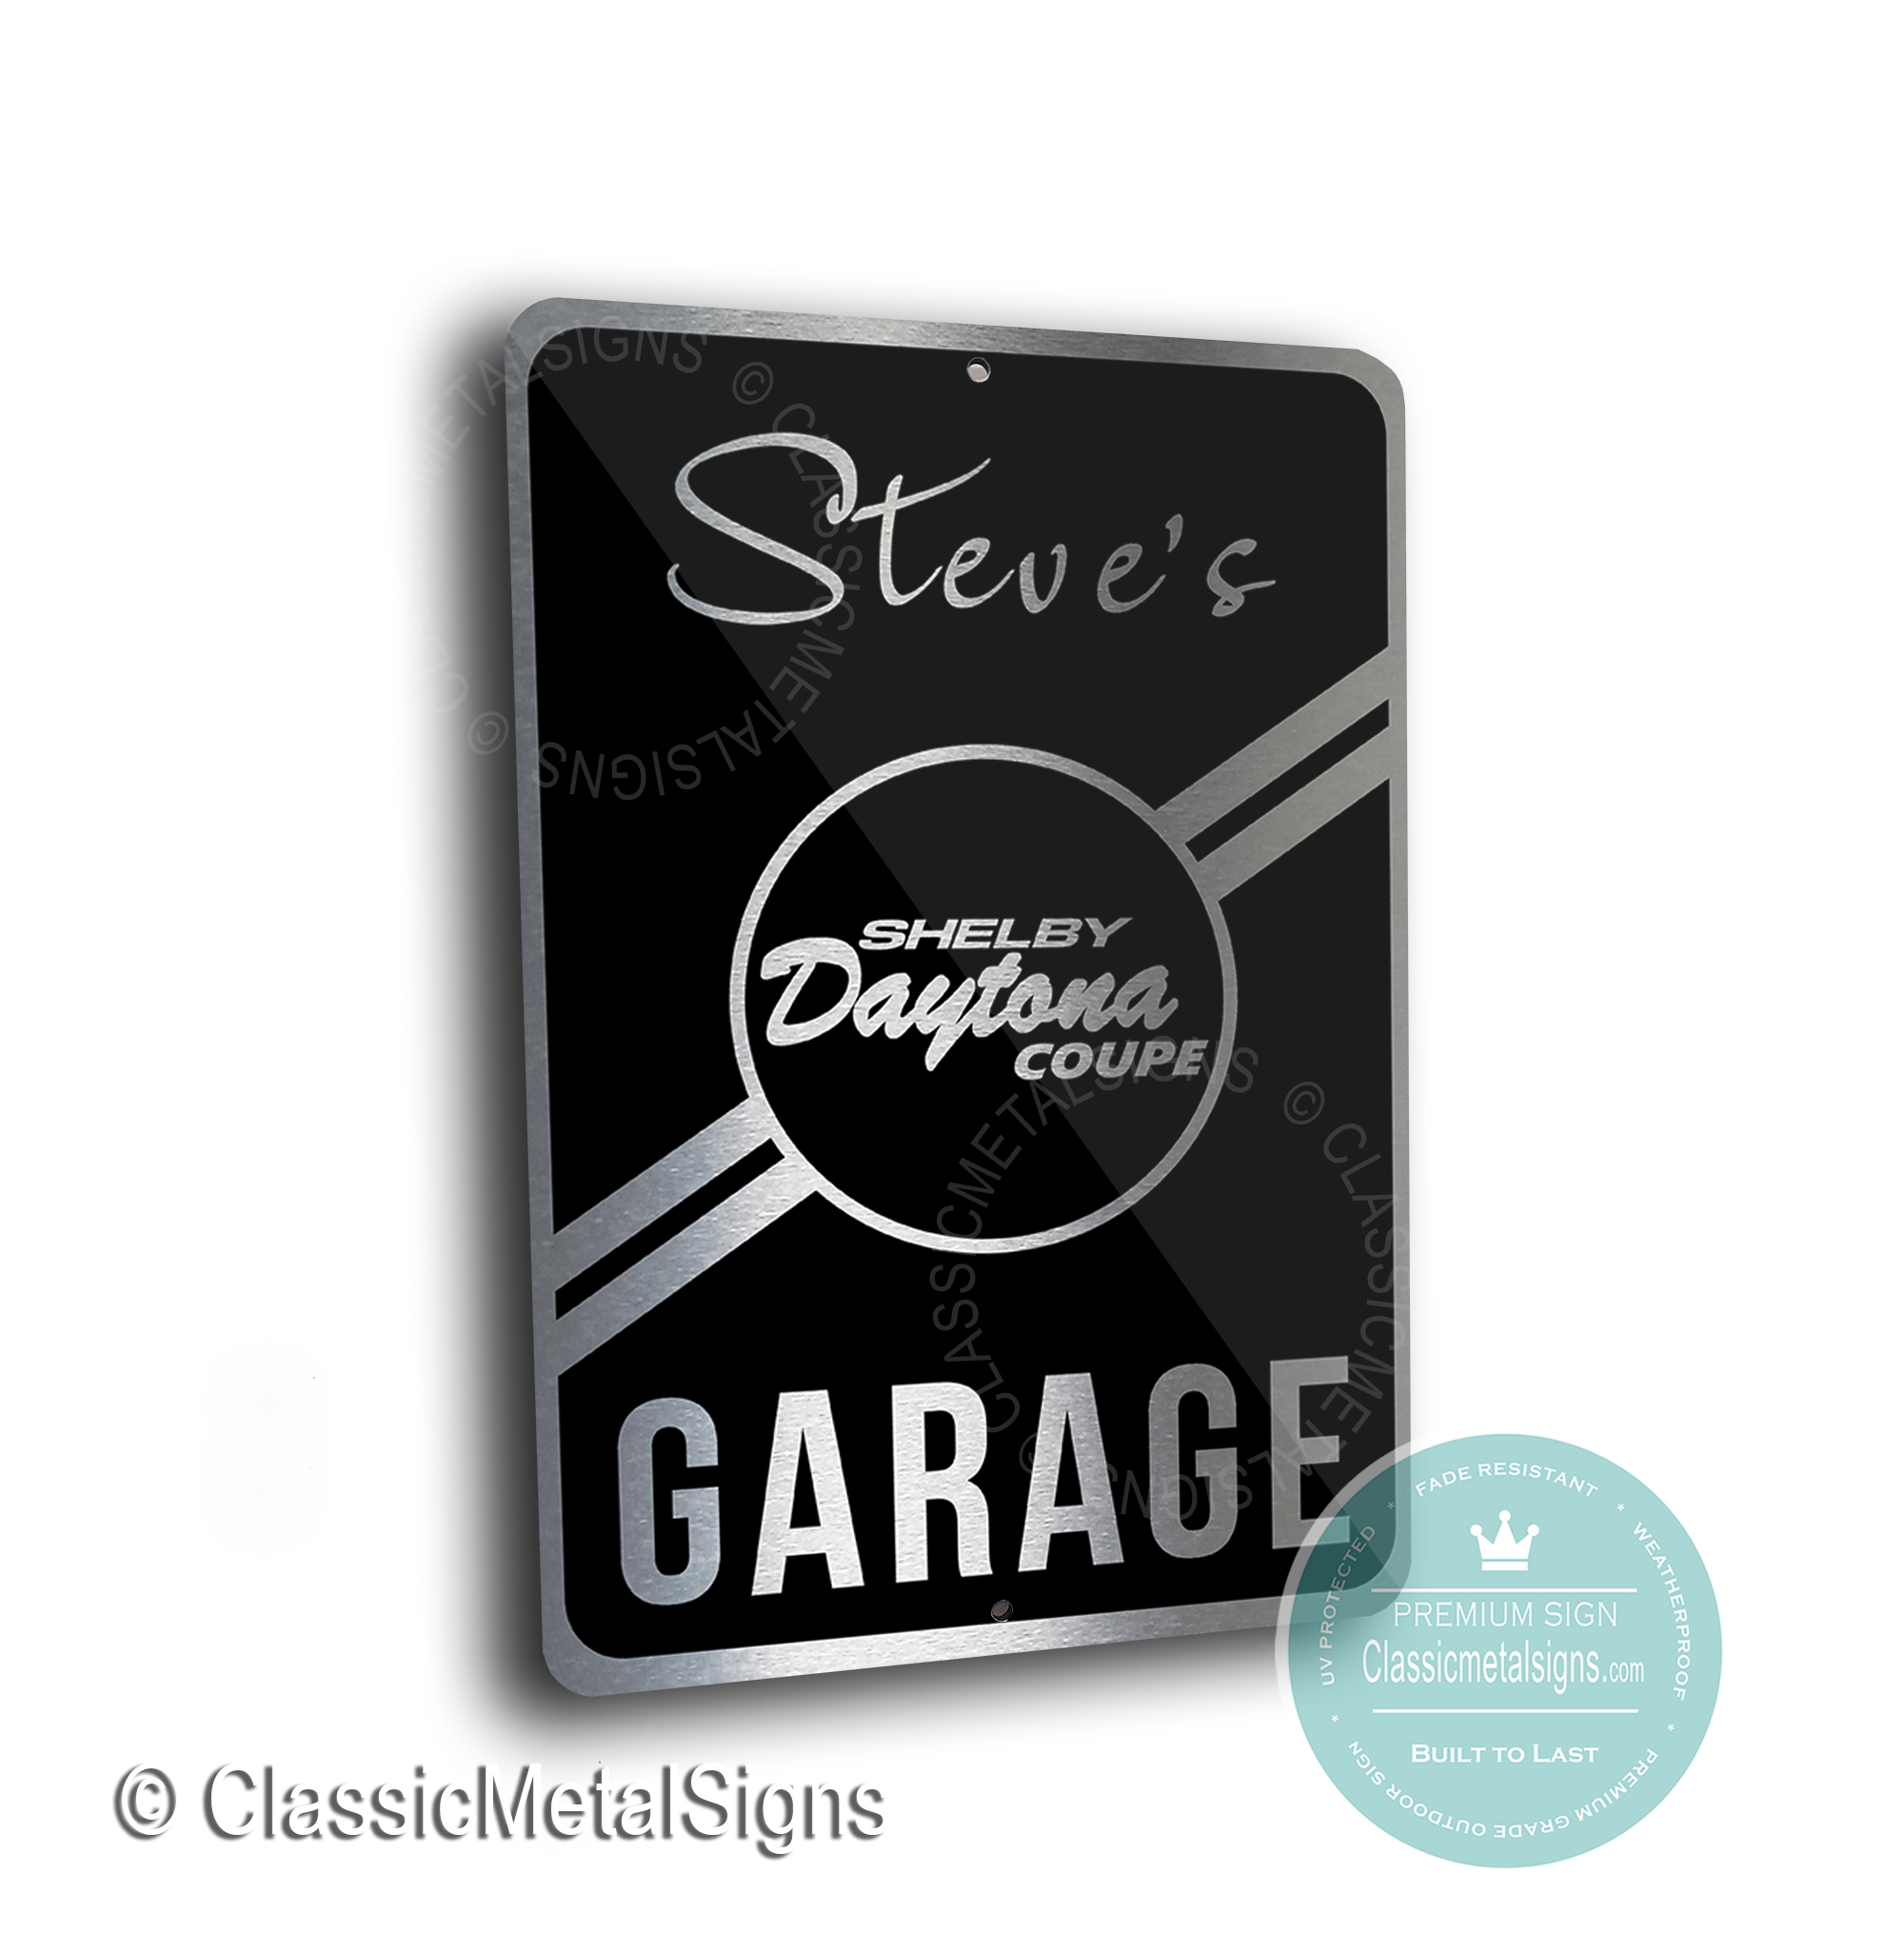 Shelby Daytona Coupe Garage Sign